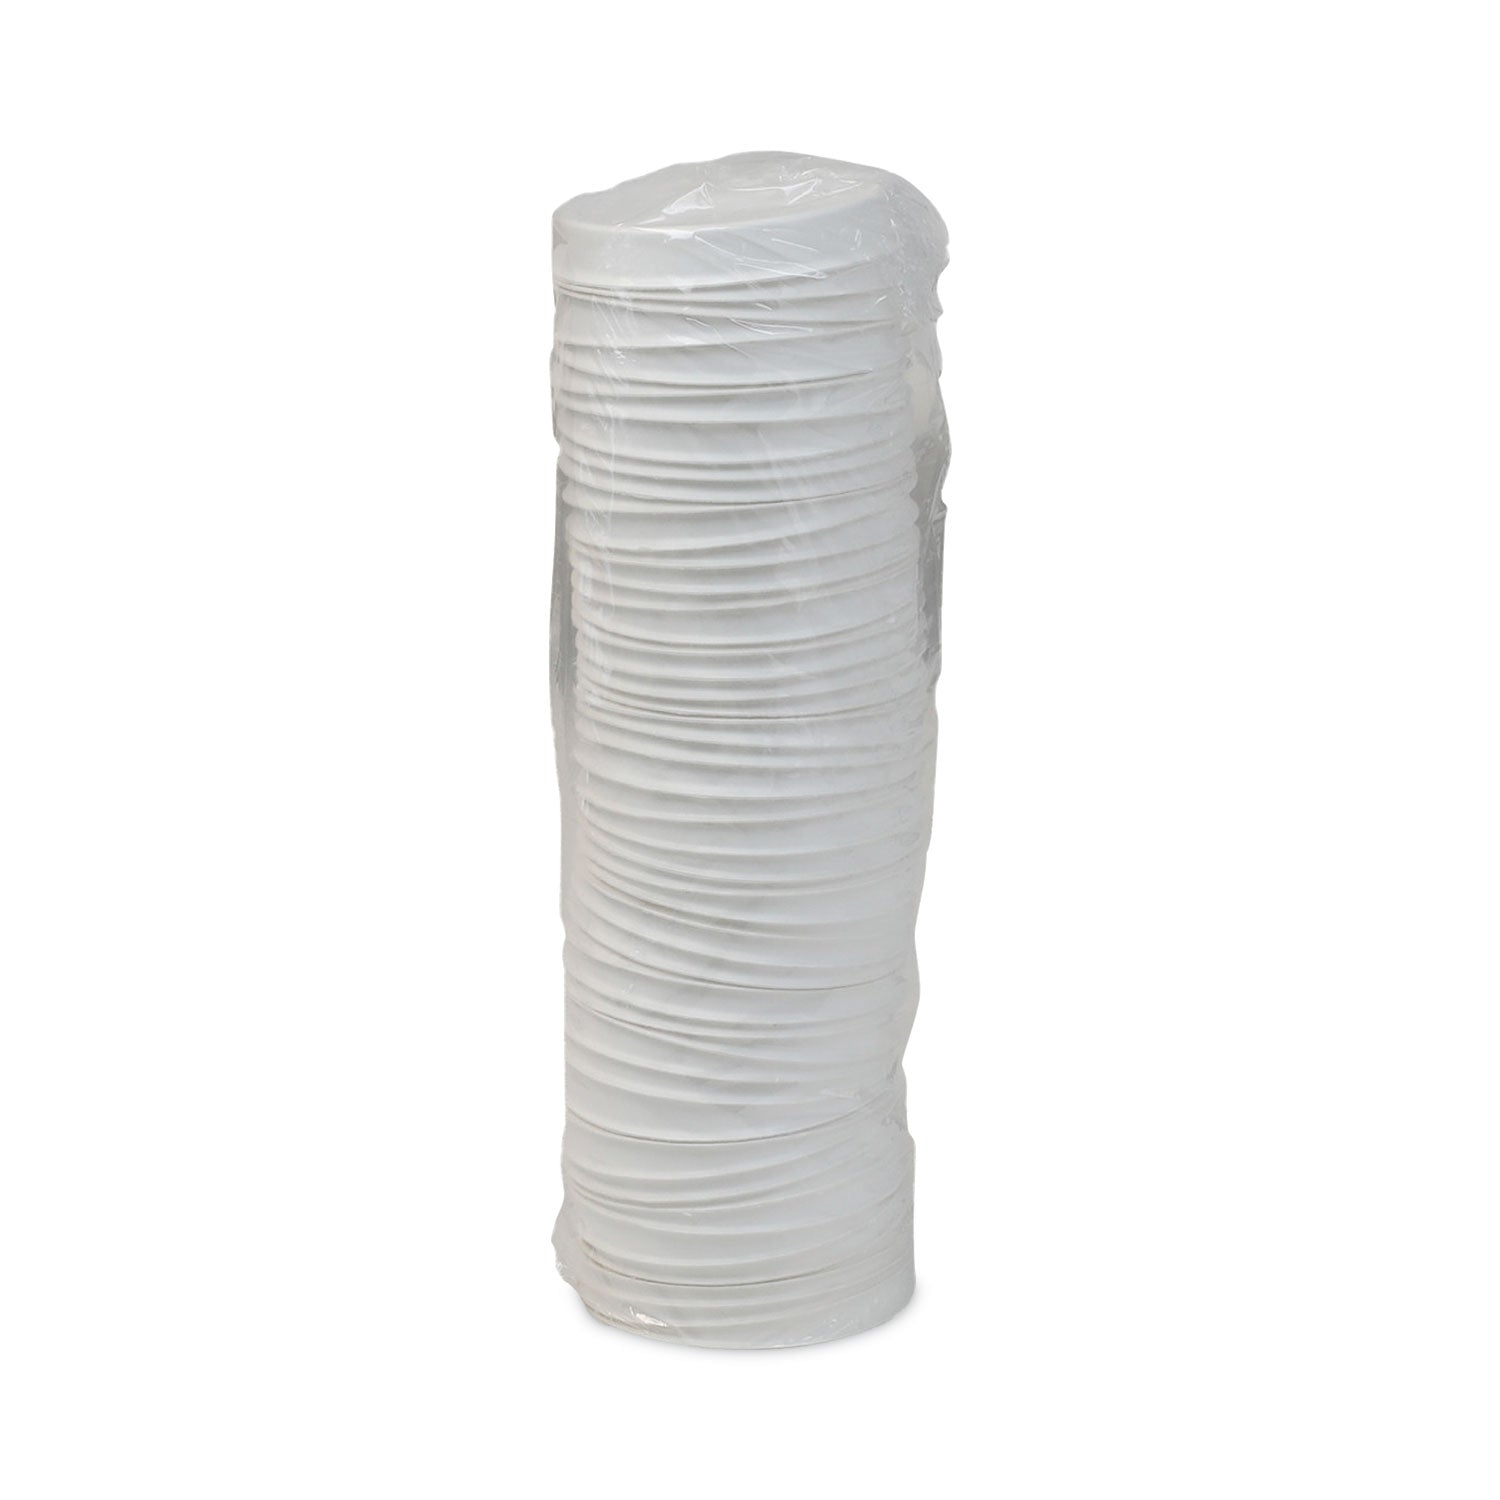 earthchoice-compostable-soup-cup-lid-for-8-16-oz-soup-cups-4-diameter-white-sugarcane-500-carton_pctlmc81216ec - 3